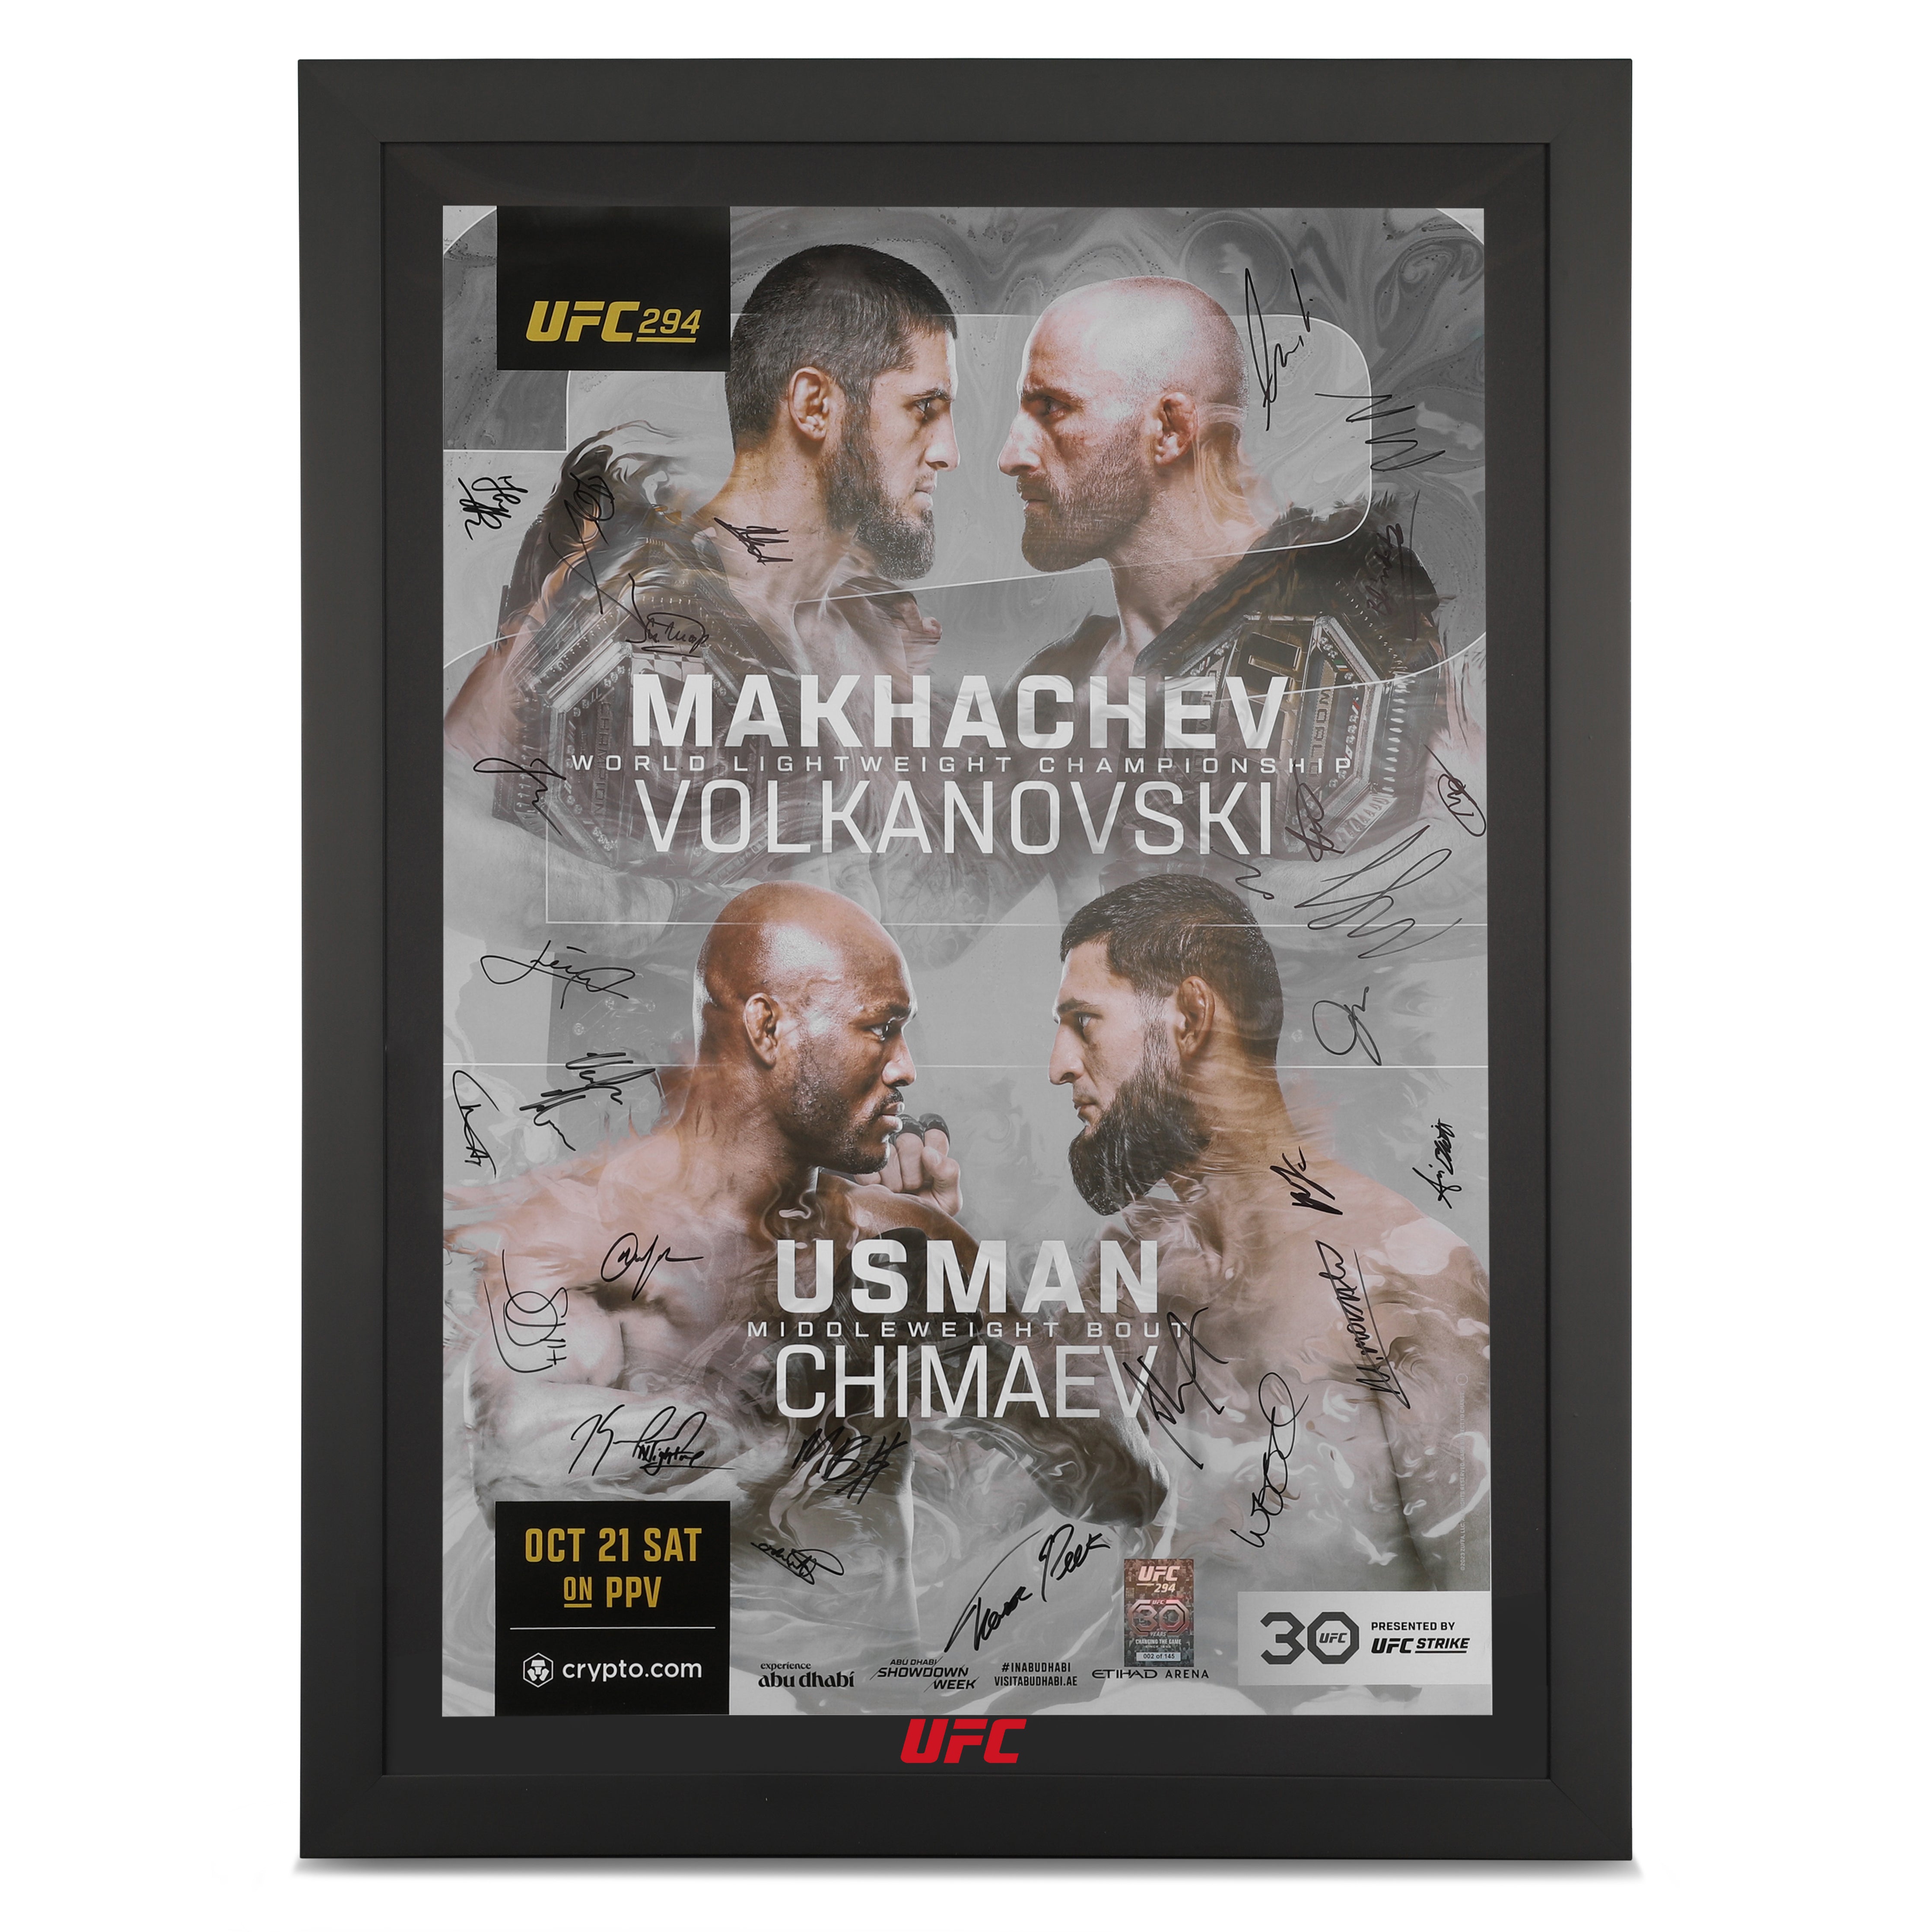 UFC 294: Makhachev vs Volkanovski 2 Autographed Event Poster - Framed